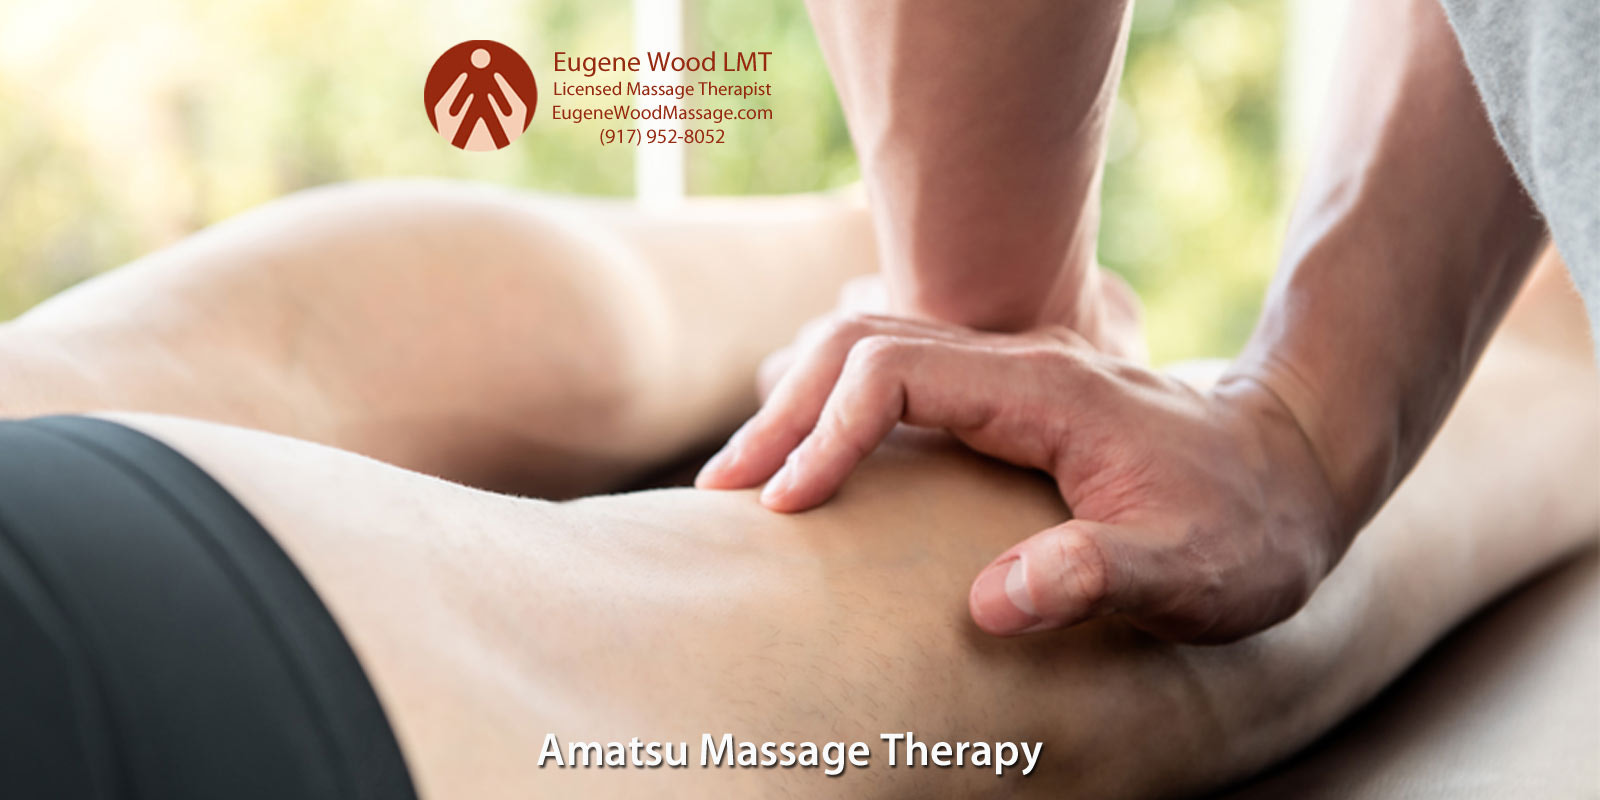 Eugene Wood: An Amatsu Massage Therapist in NY